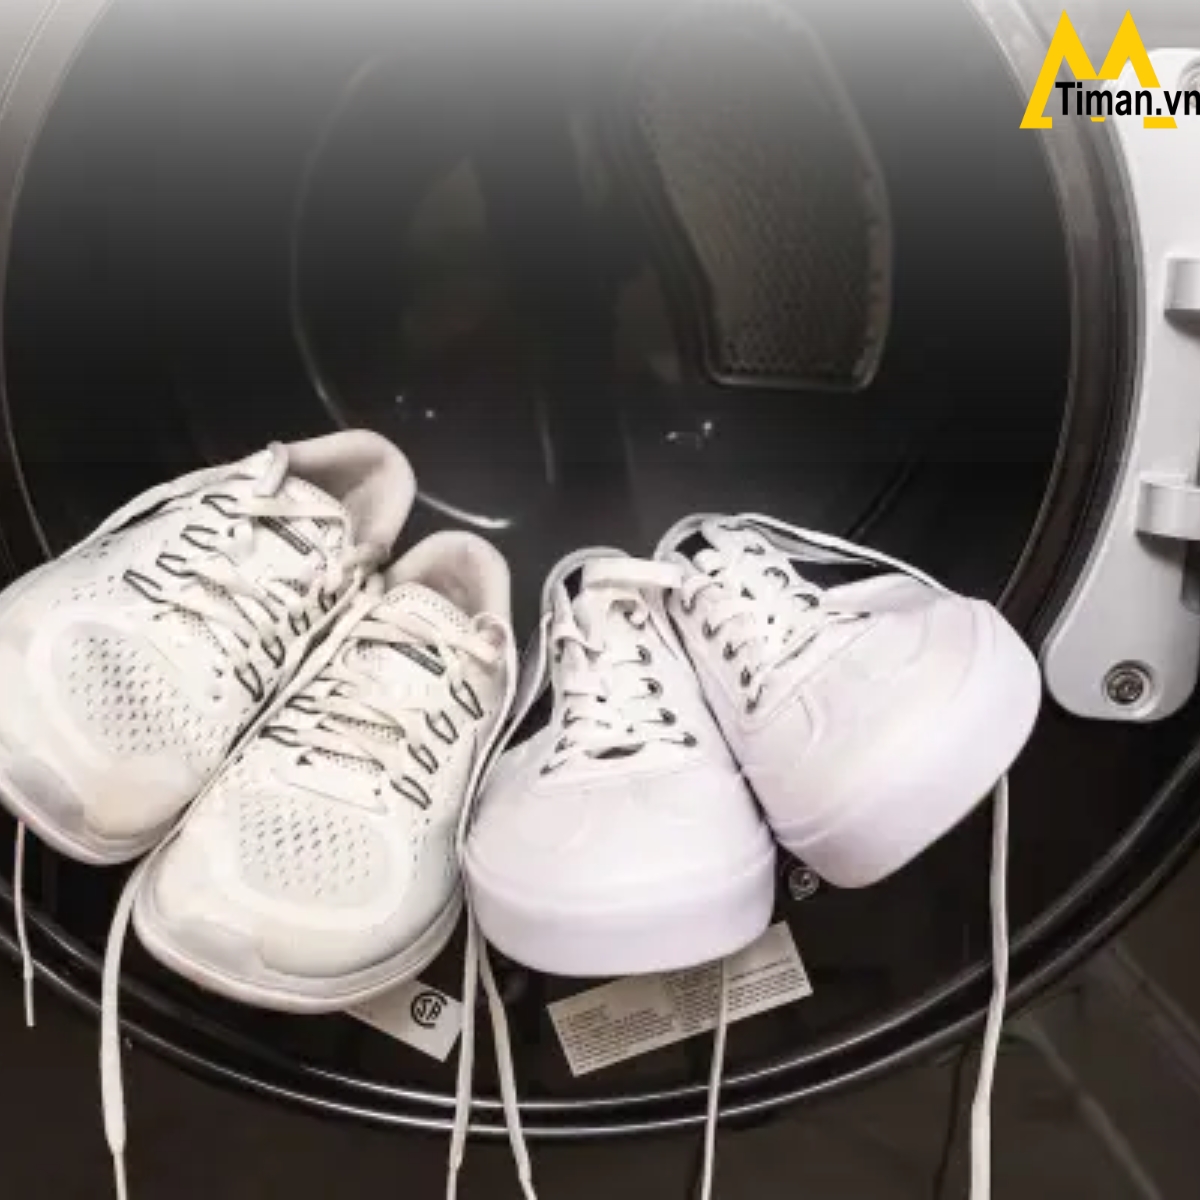 Cách phơi giày bằng máy sấy quần áo